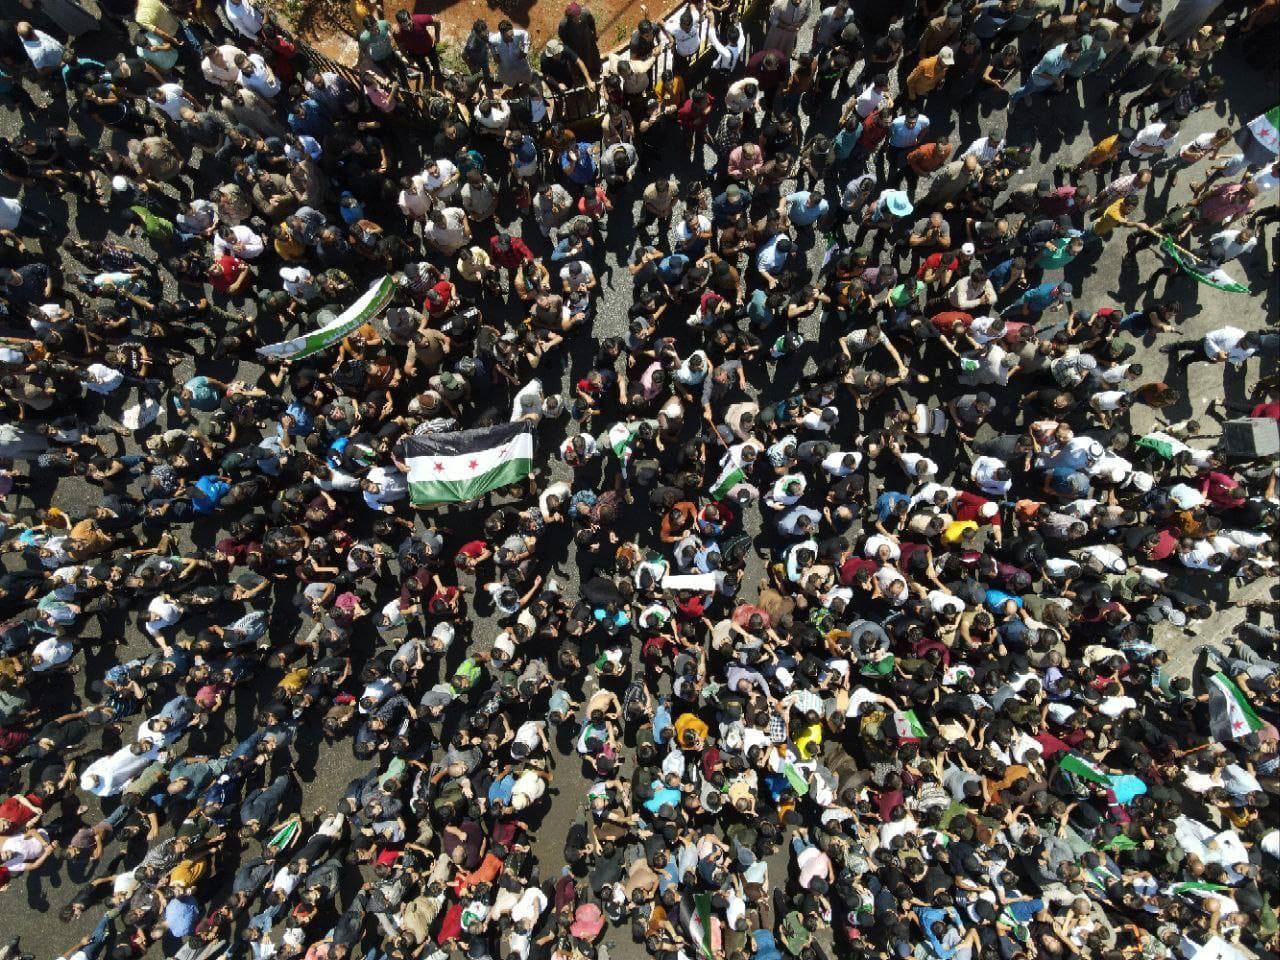 تظاهرات حاشدة شمال سوريا تنديداً بدعوة أنقرة الى "مصالحة" مع النظام